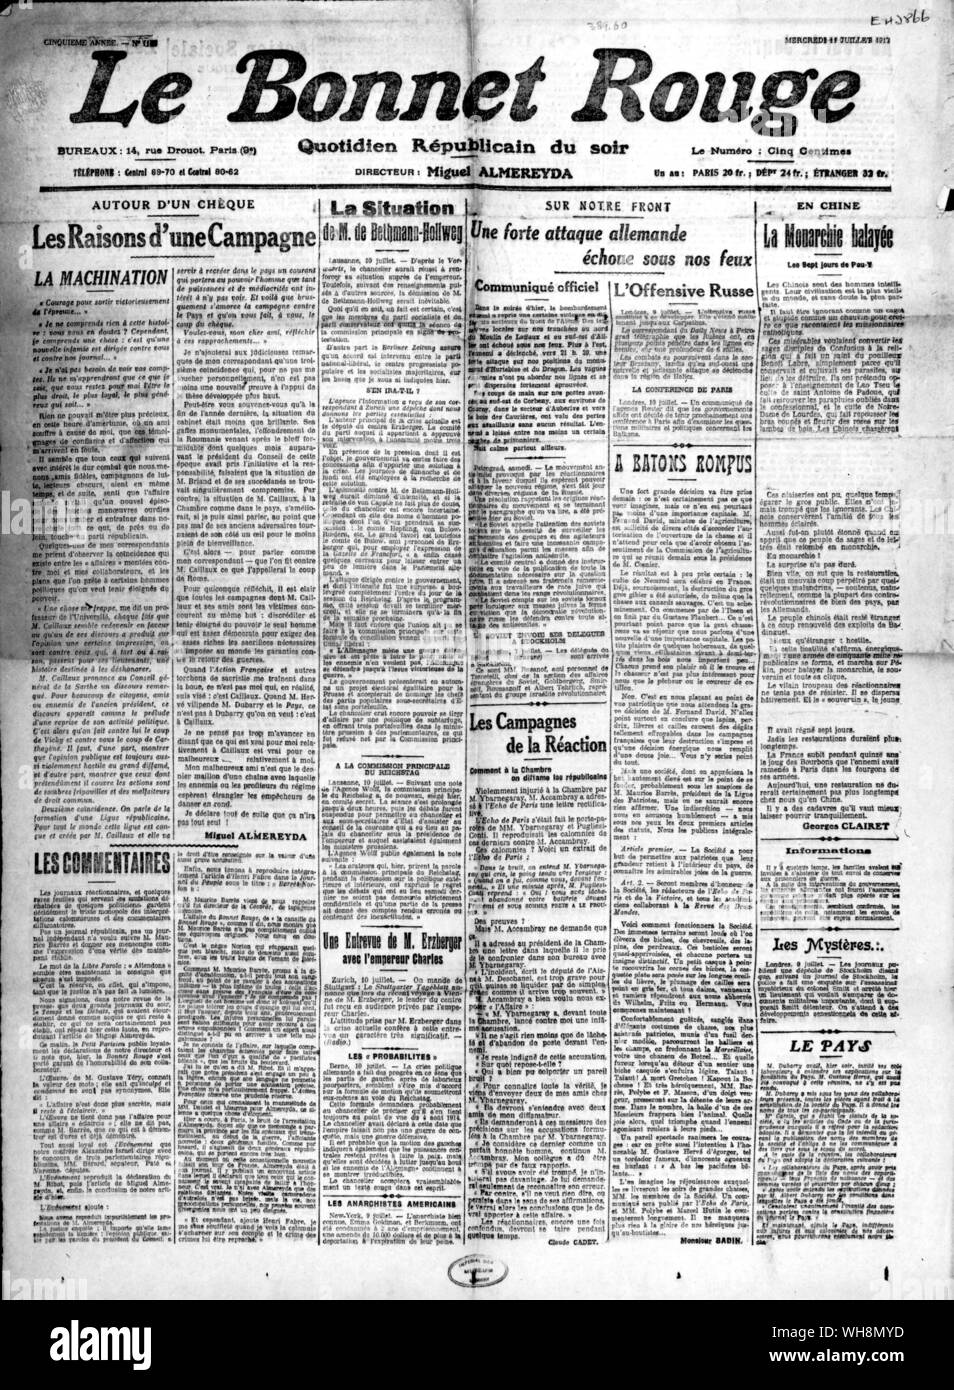 El papel revolucionario y pacifista francés Le bonnet Rouge publicadas durante los disturbios de 1917 Foto de stock